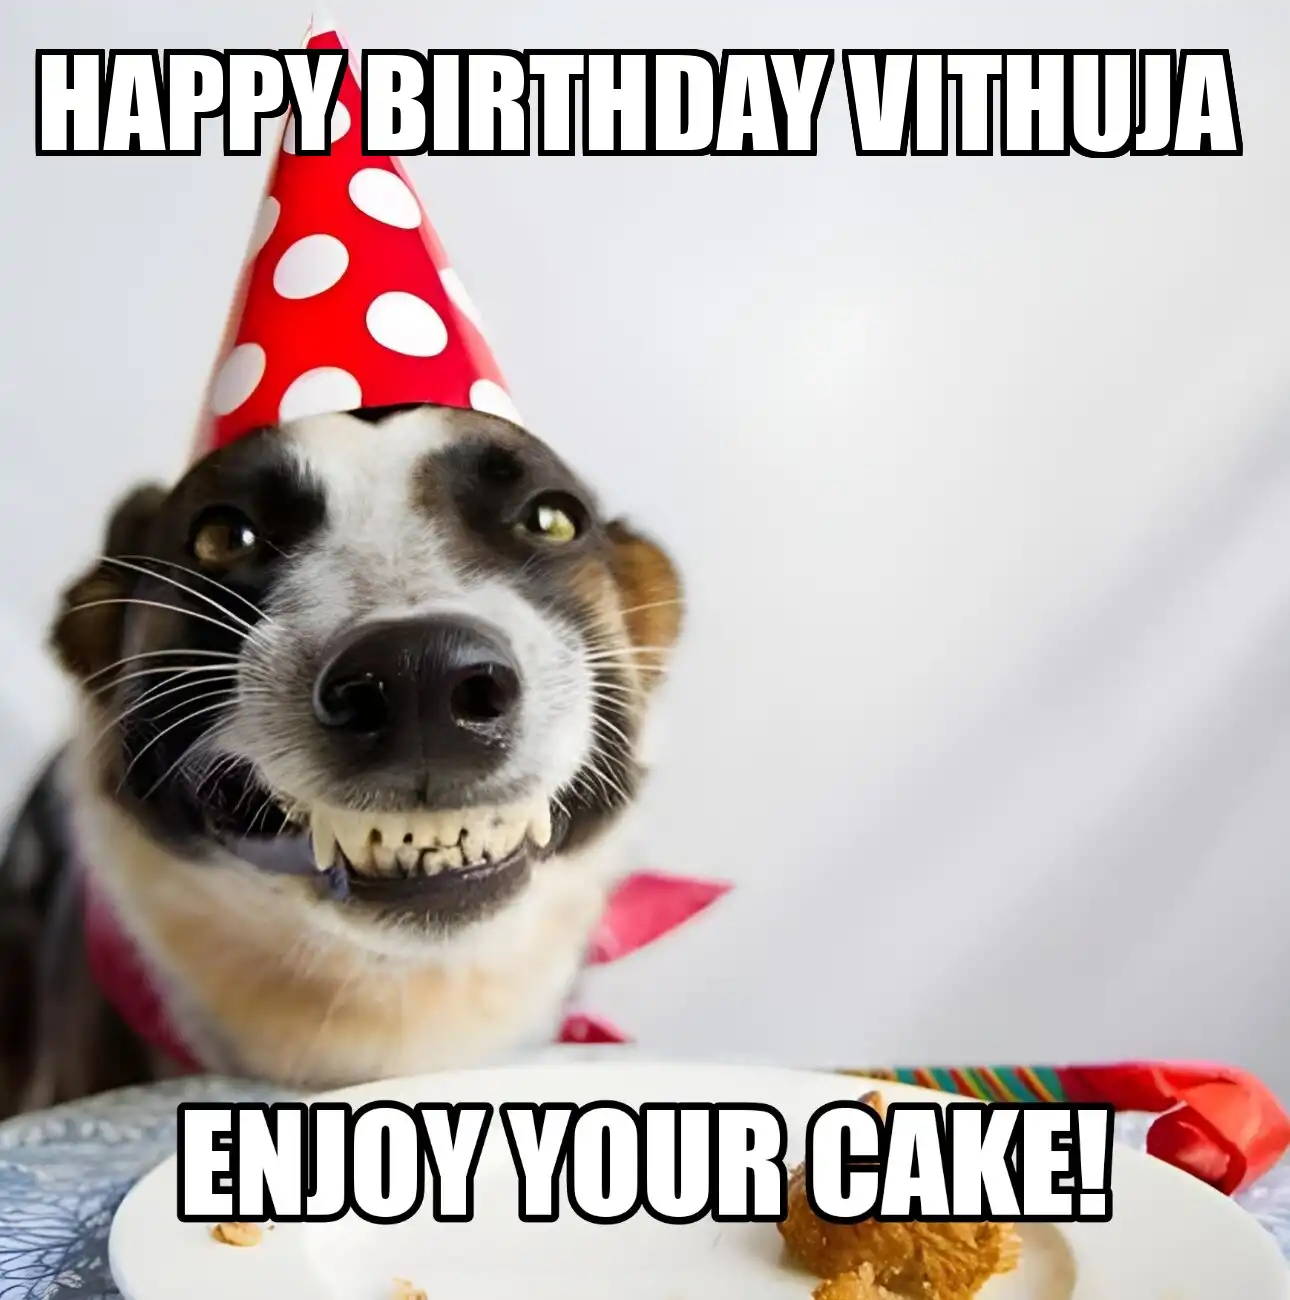 Happy Birthday Vithuja Enjoy Your Cake Dog Meme